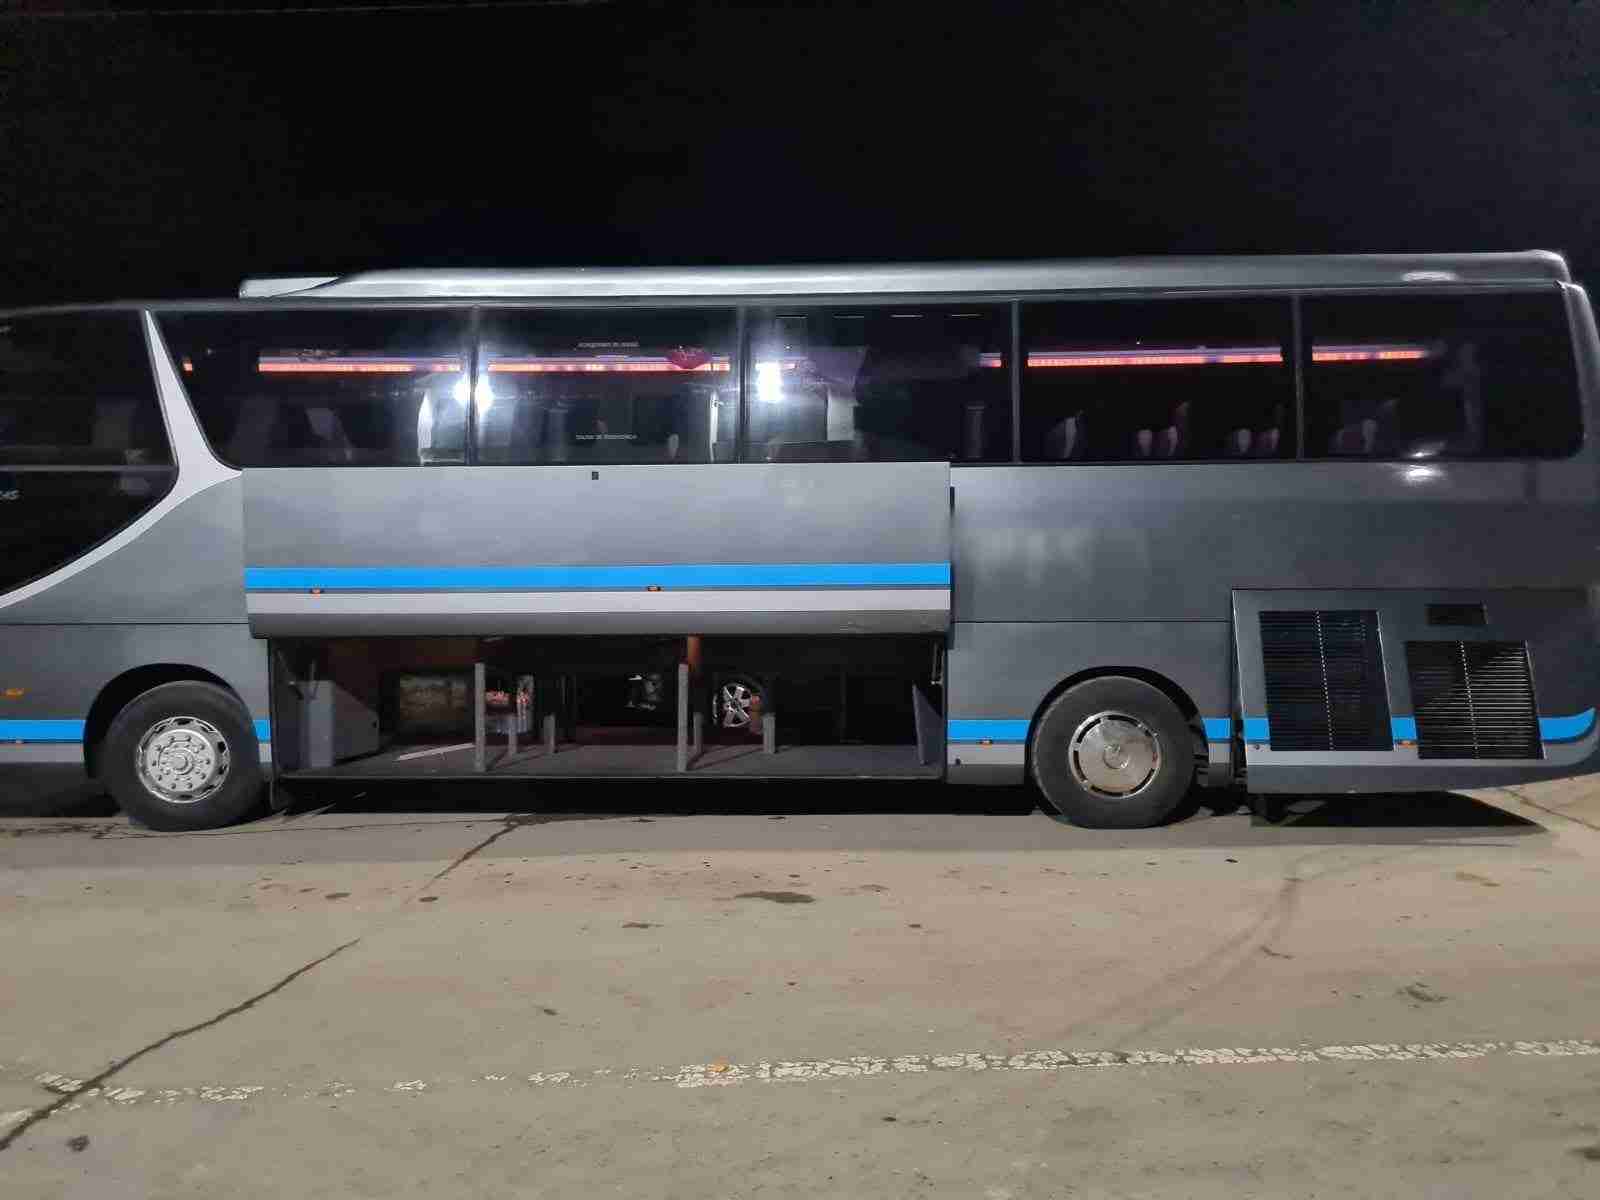 Велика нічна розпаковка: прикордонники затримали групу туристів через контрабанду в автобусі (ФОТО)